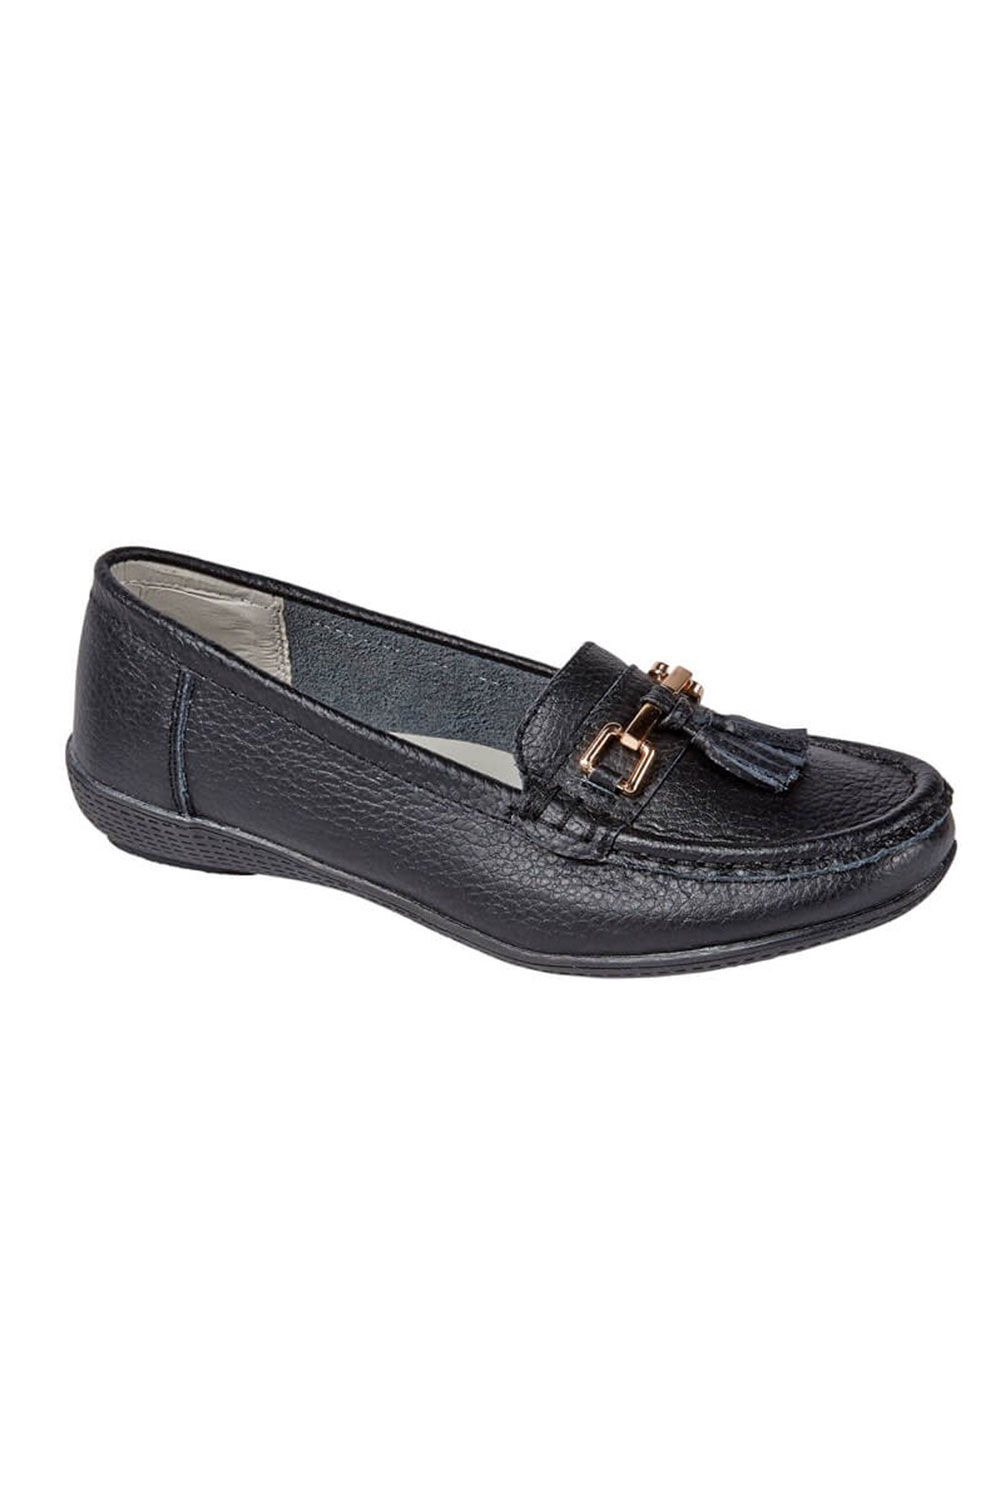 Jo & Joe Women’s Black Leather Moccasin Shoes with Tassel Detail, Size: 5